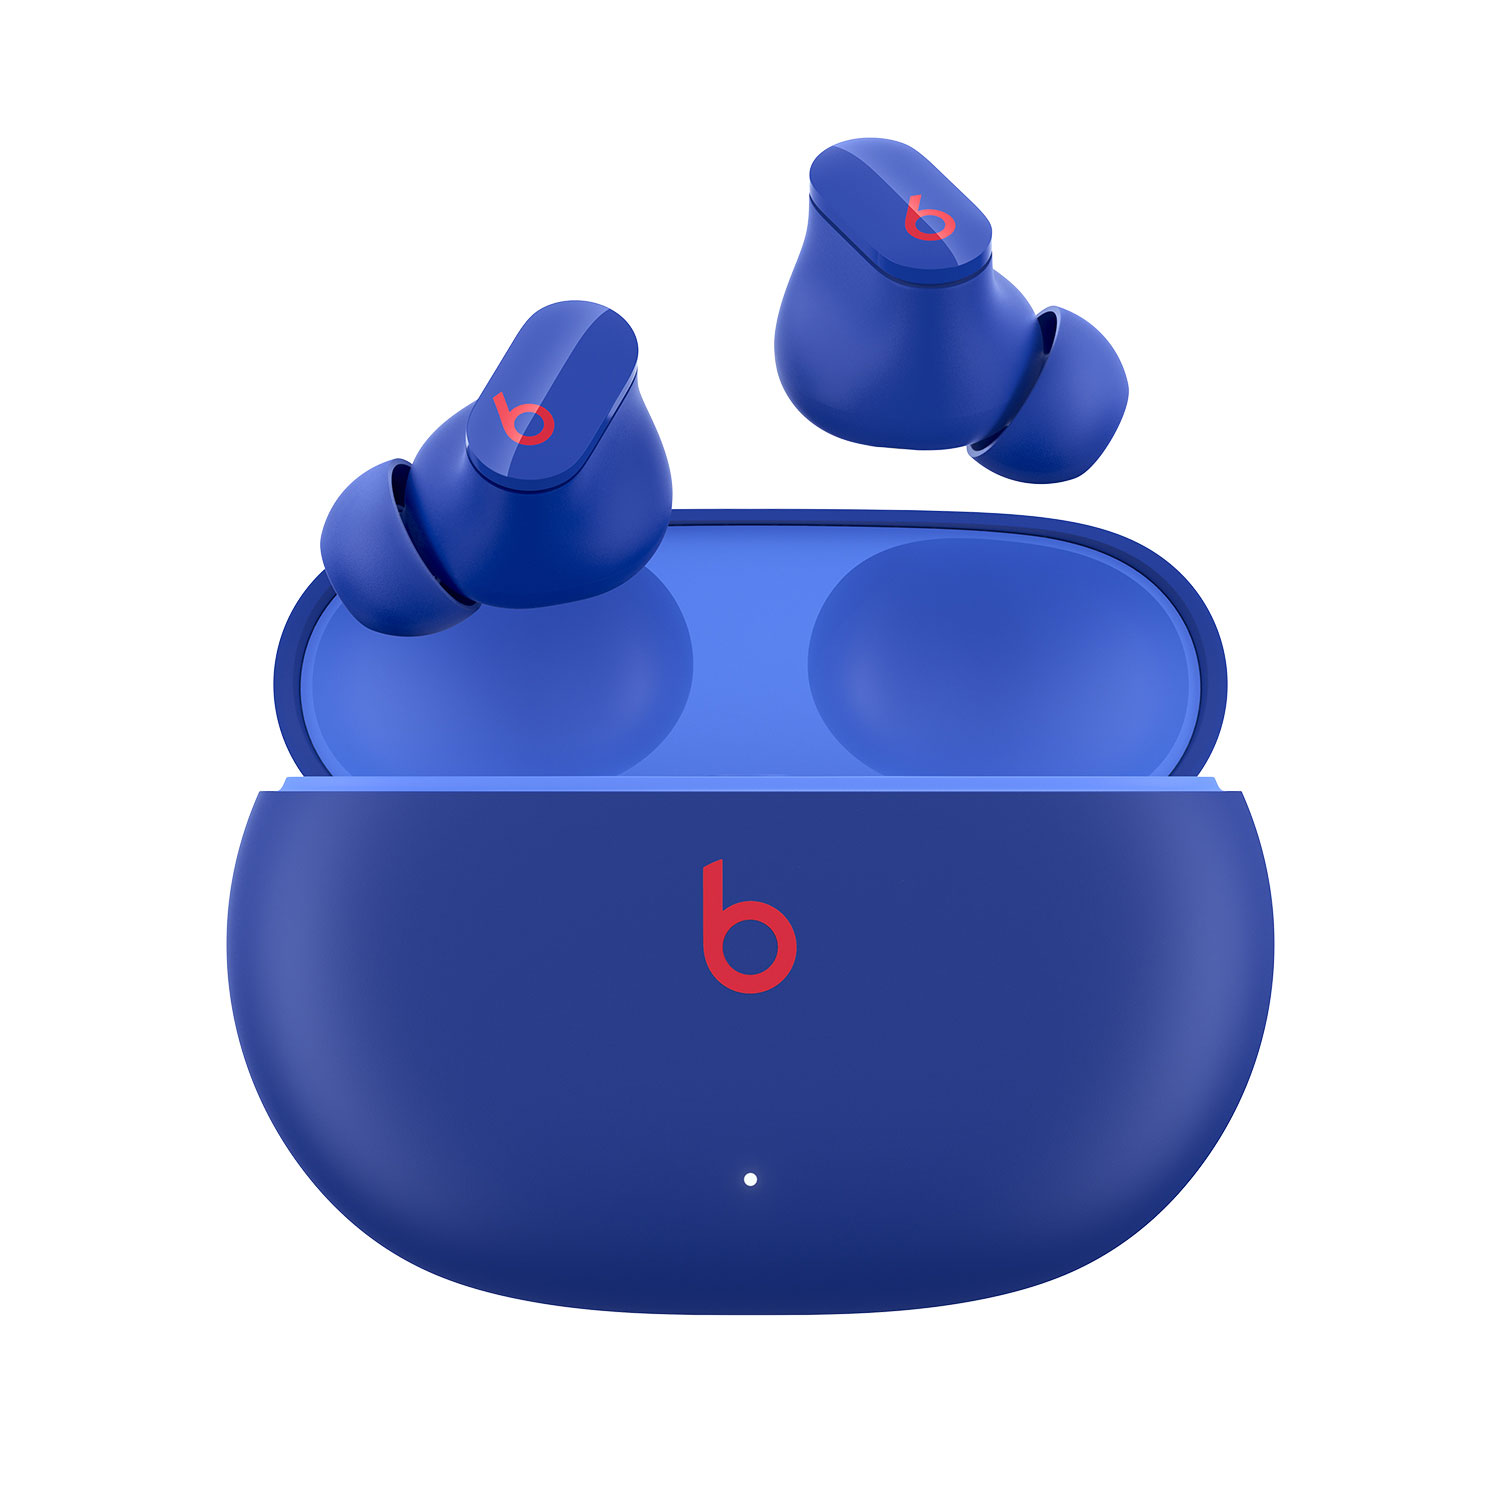 Beats By Dr. Dre Studio Buds In-Ear Noise Cancelling True Wireless Earbuds - Ocean Blue